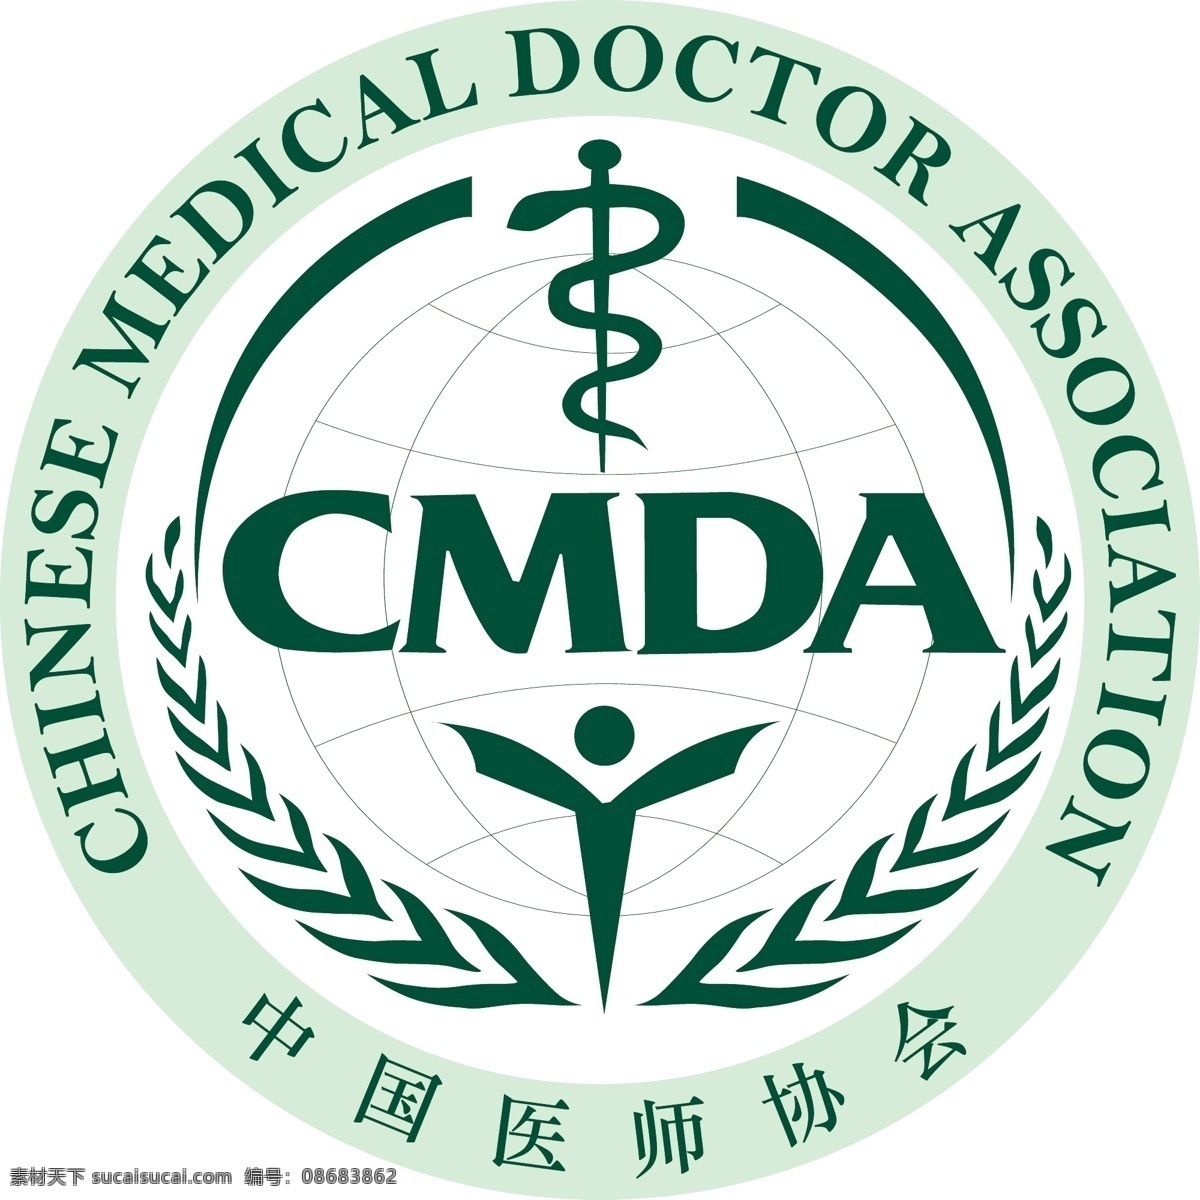 中国 医师 协会 logo 医生 标志 标志图标 公共标识标志